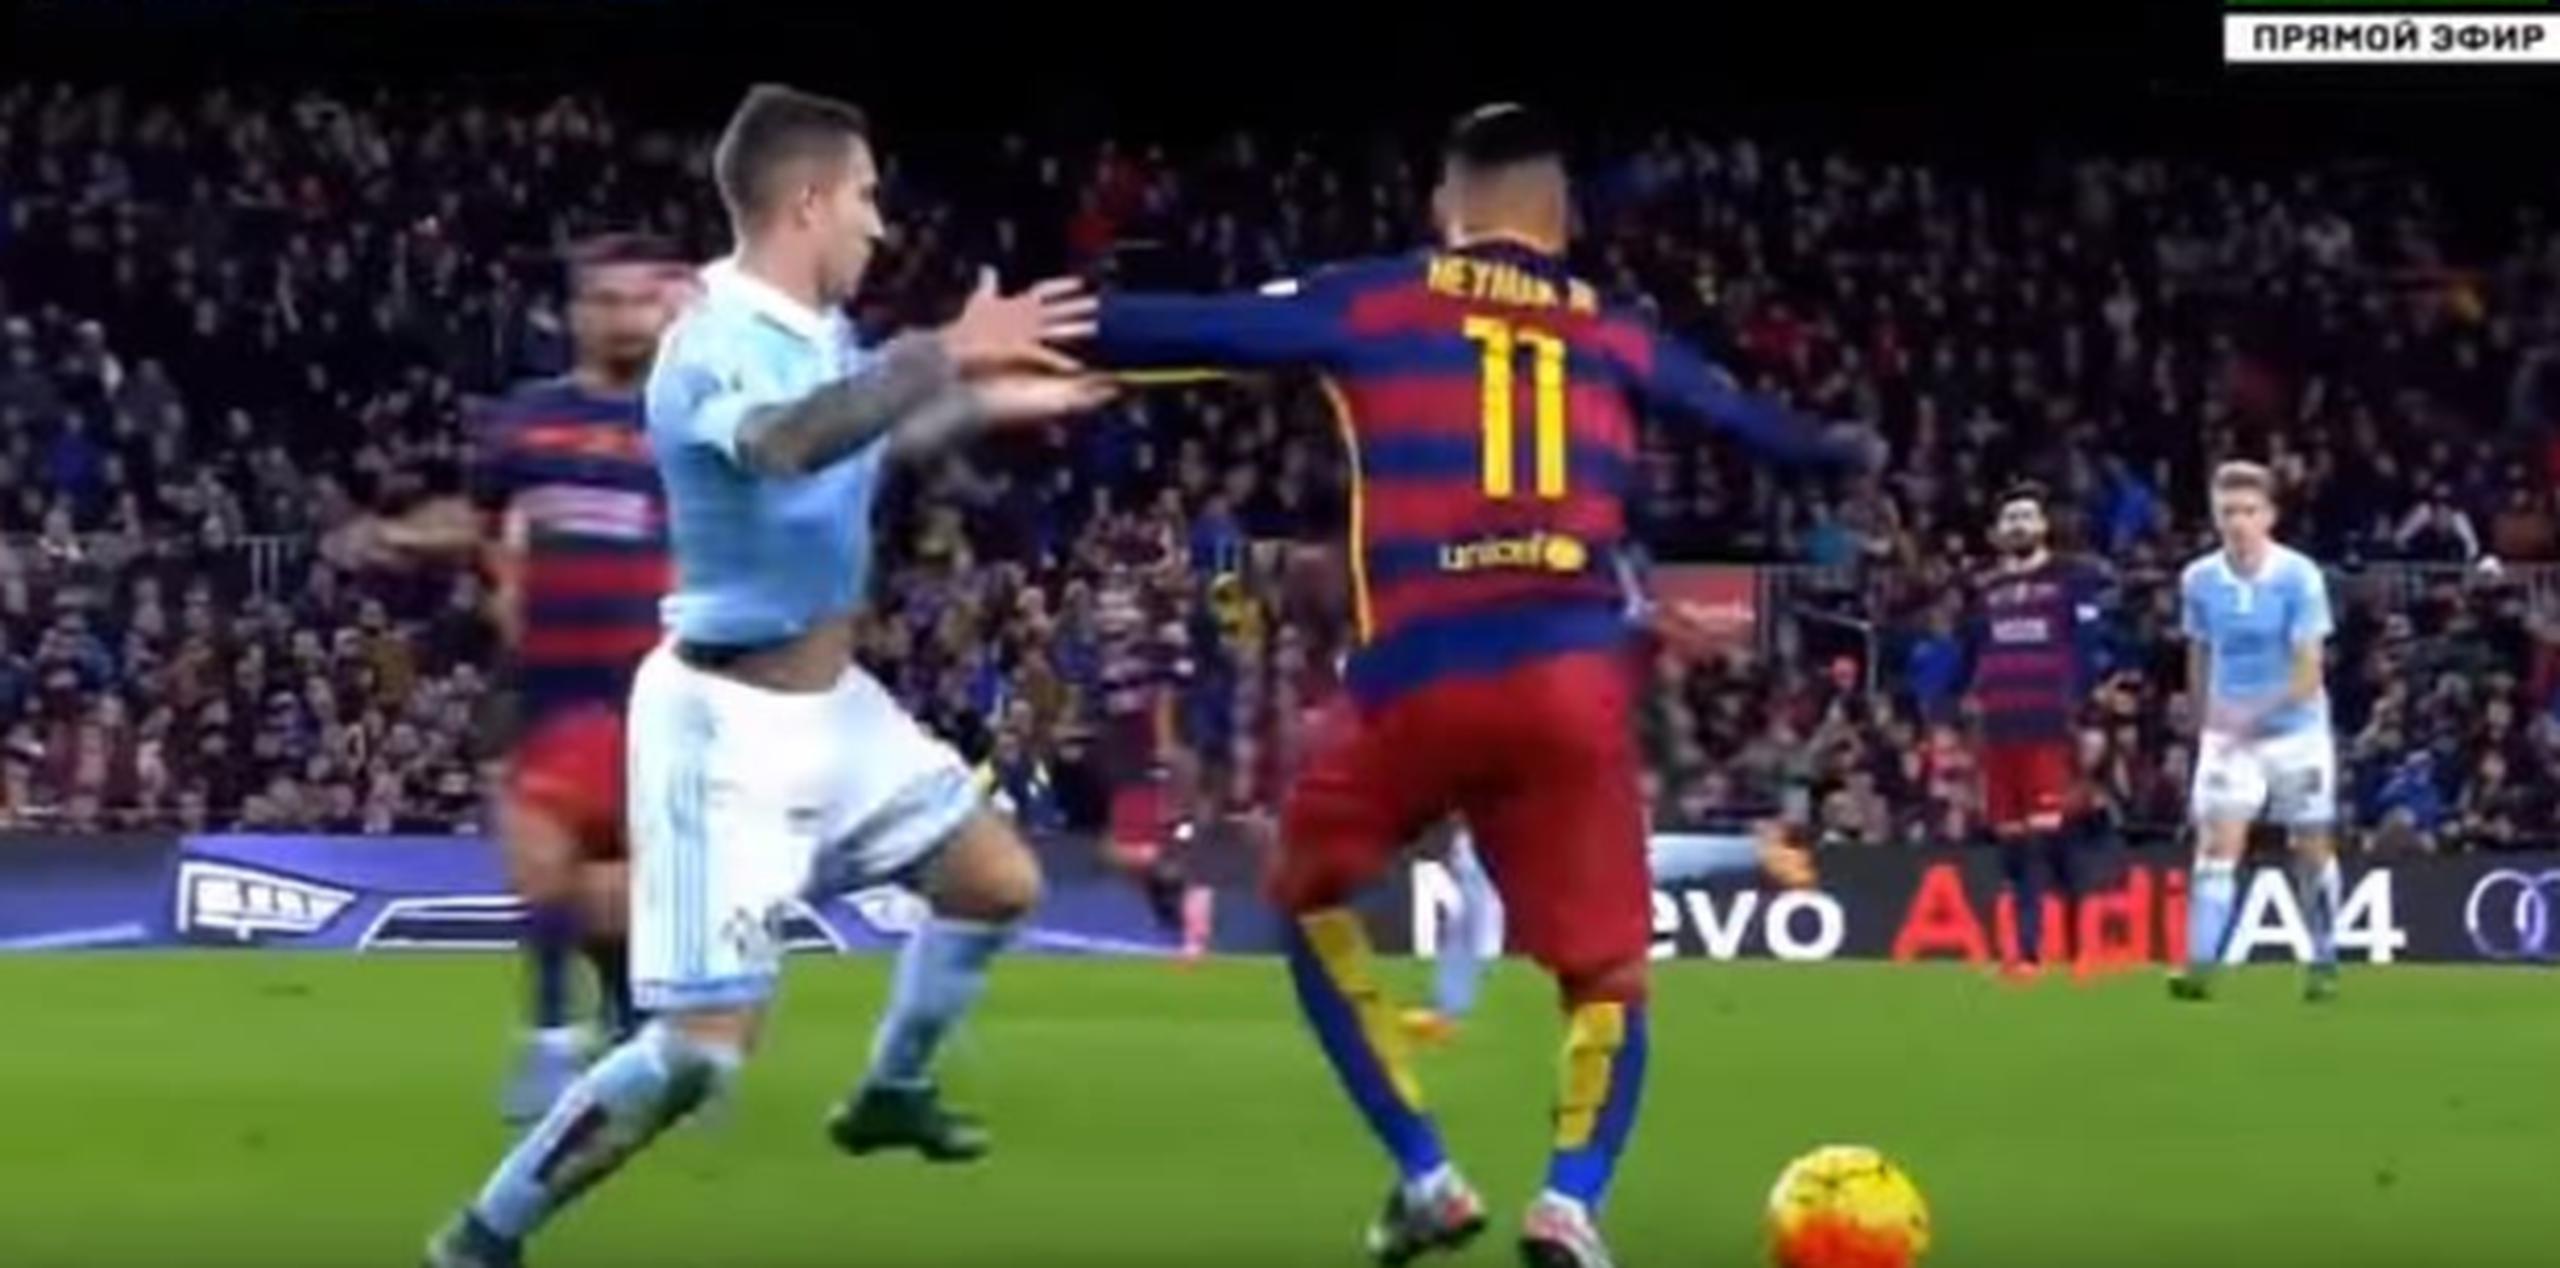 Barcelona goleó 6-1 al Celta de Vigo con gran actuación de Neymar, Lionel Messi y Luis Suárez. (YouTube)